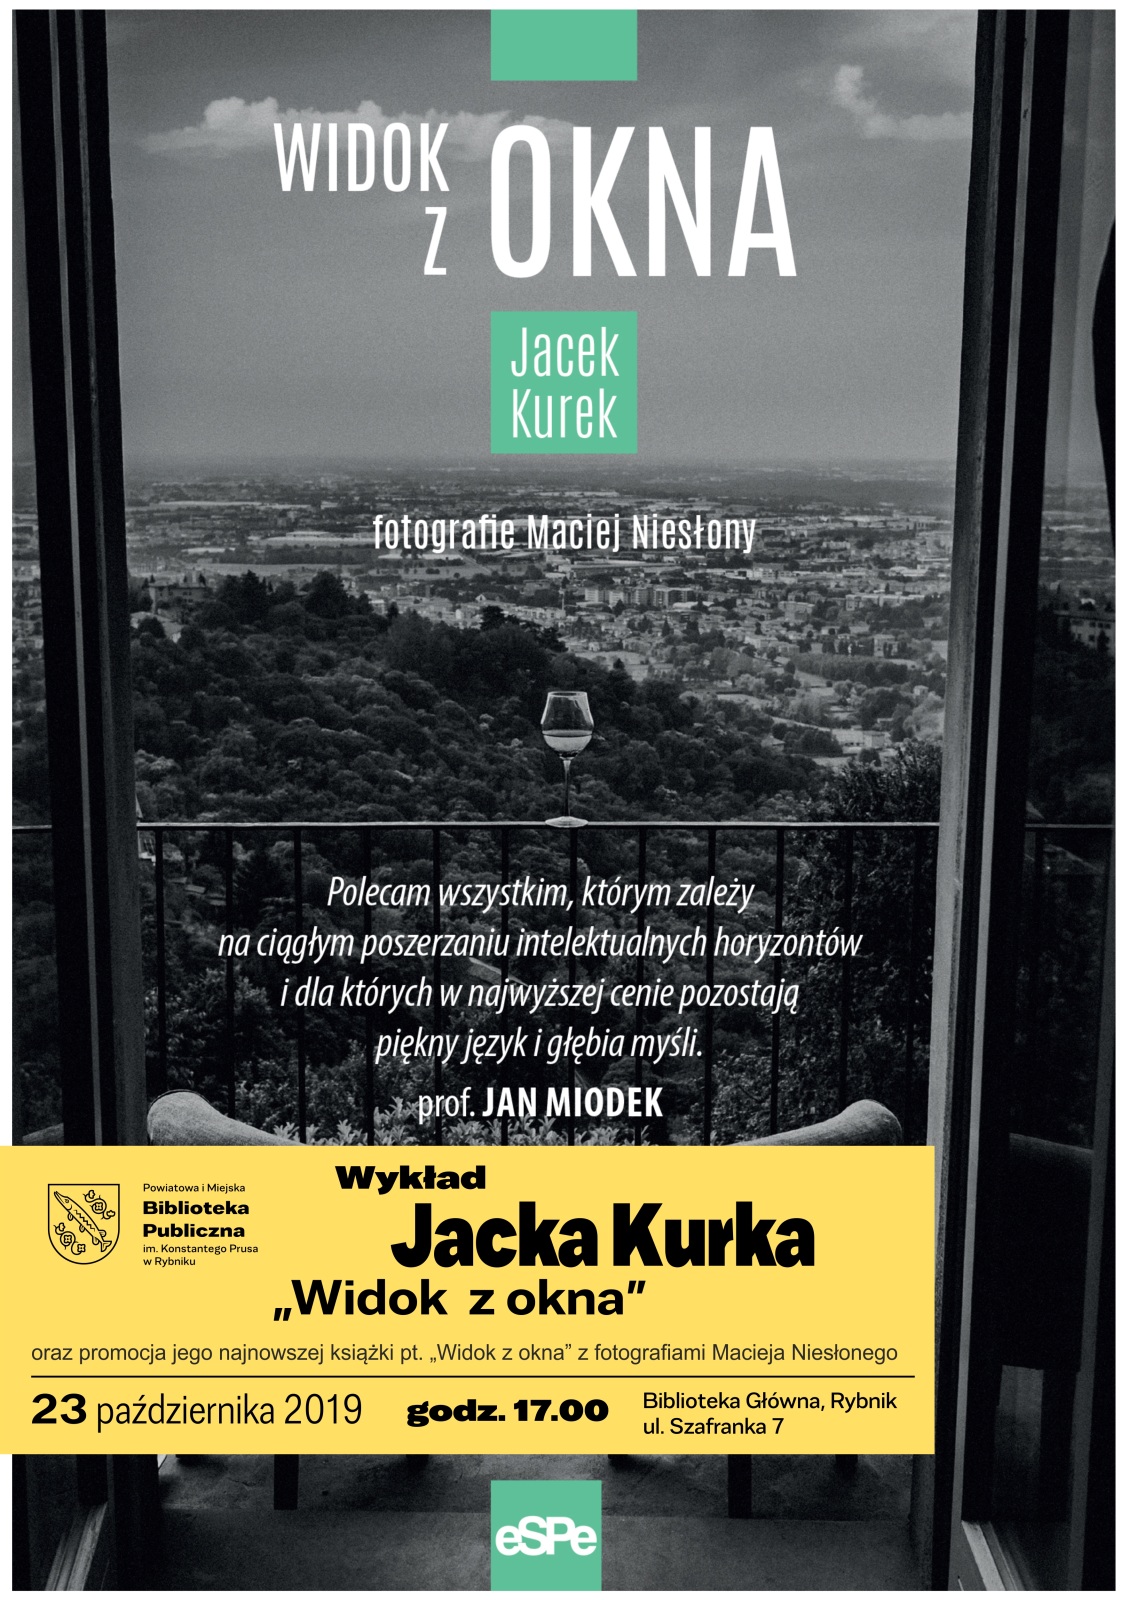 Jacek_Kurek_widok_z_okna_wyklad_2019_plakat.jpg